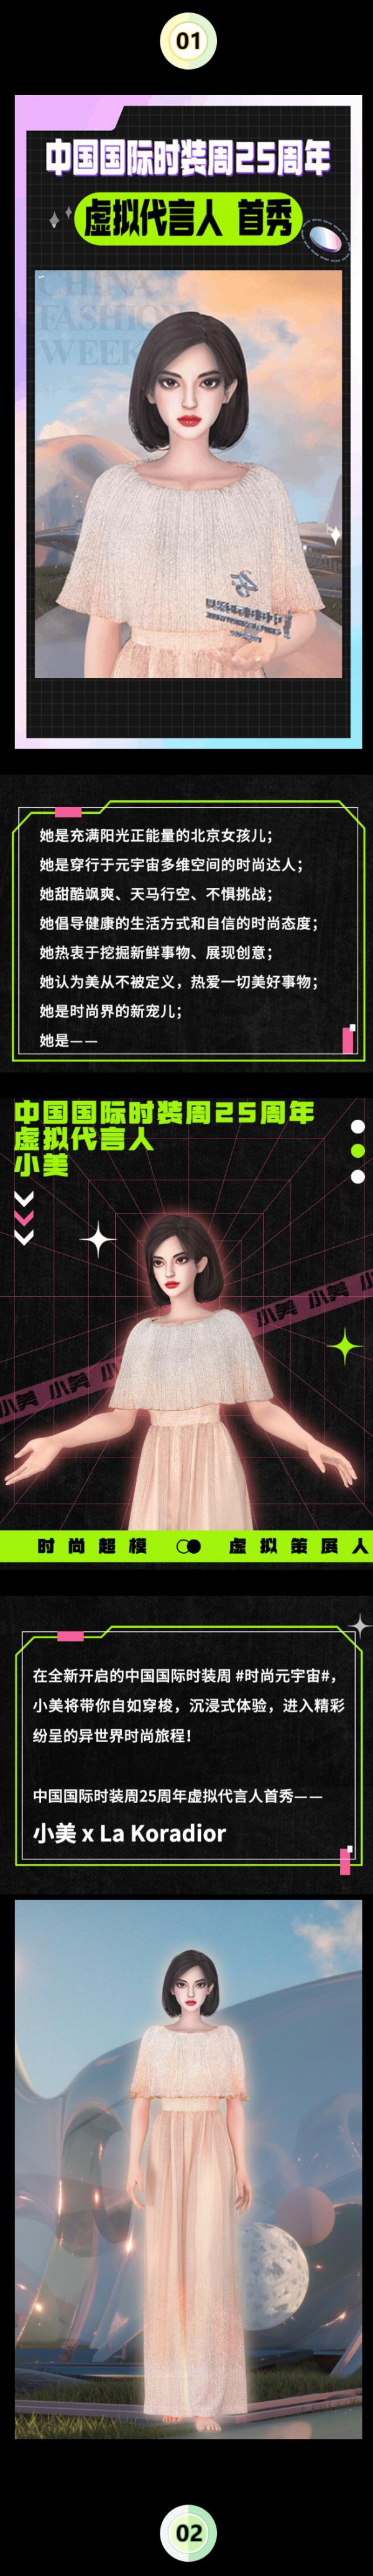 AW22中国国际时装周 #时尚元宇宙# 开启！25周年虚拟代言人官宣！